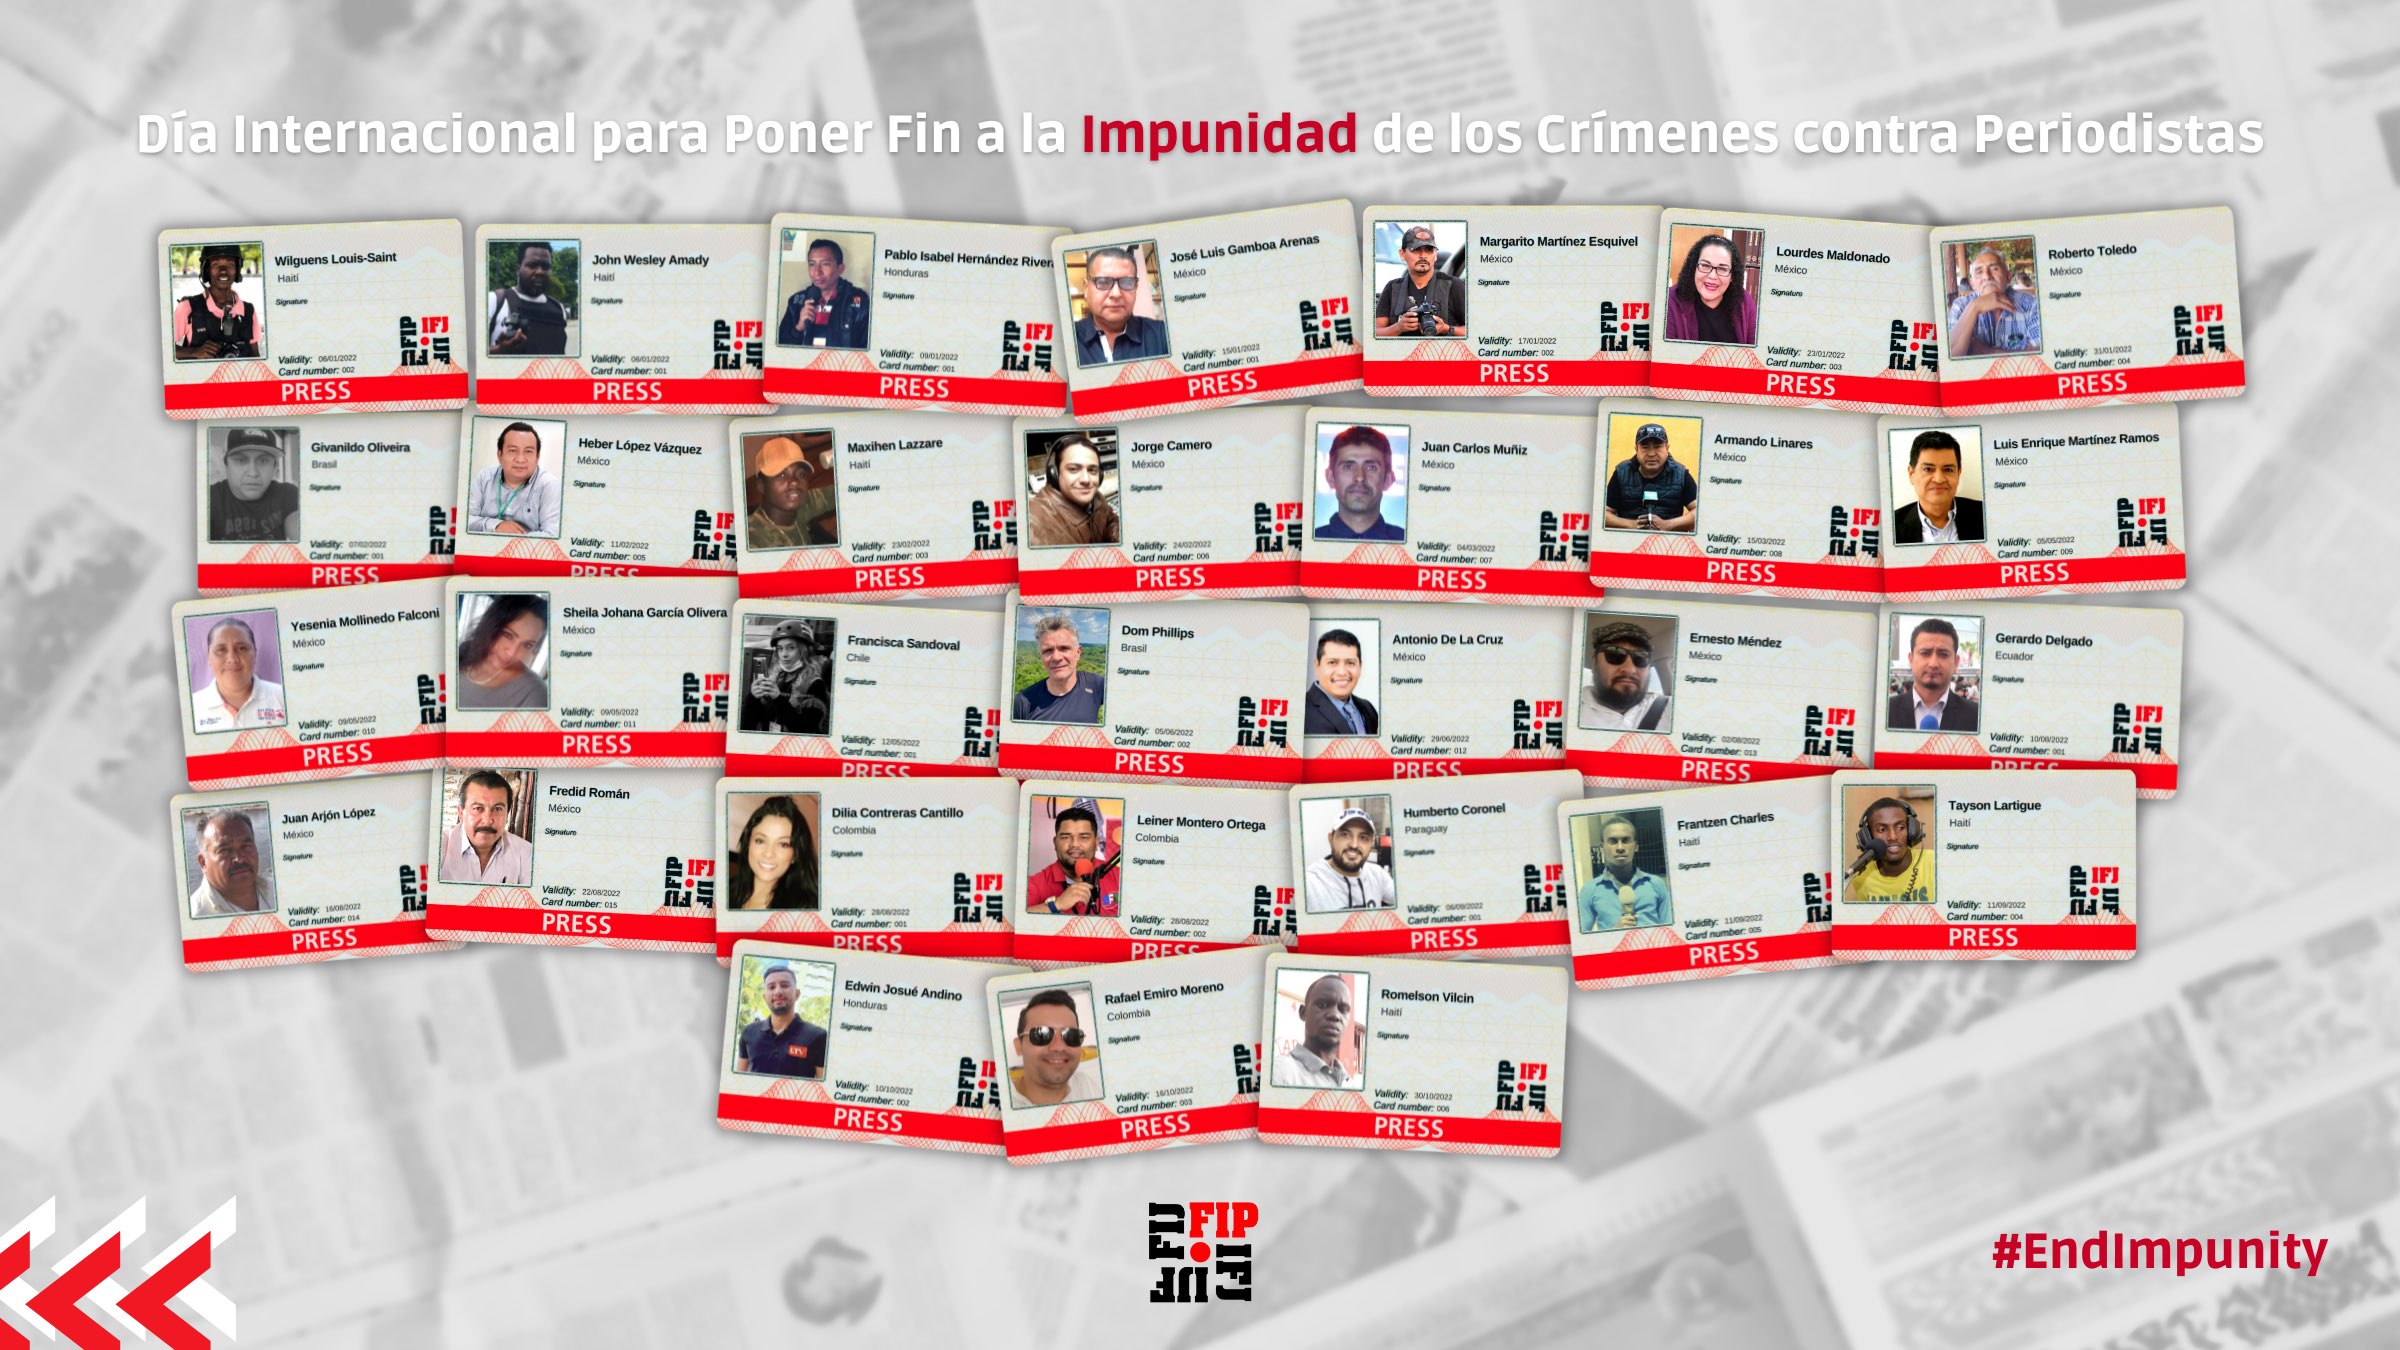 Impunidad en América Latina y el Caribe: al menos 31 periodistas fueron asesinados este año